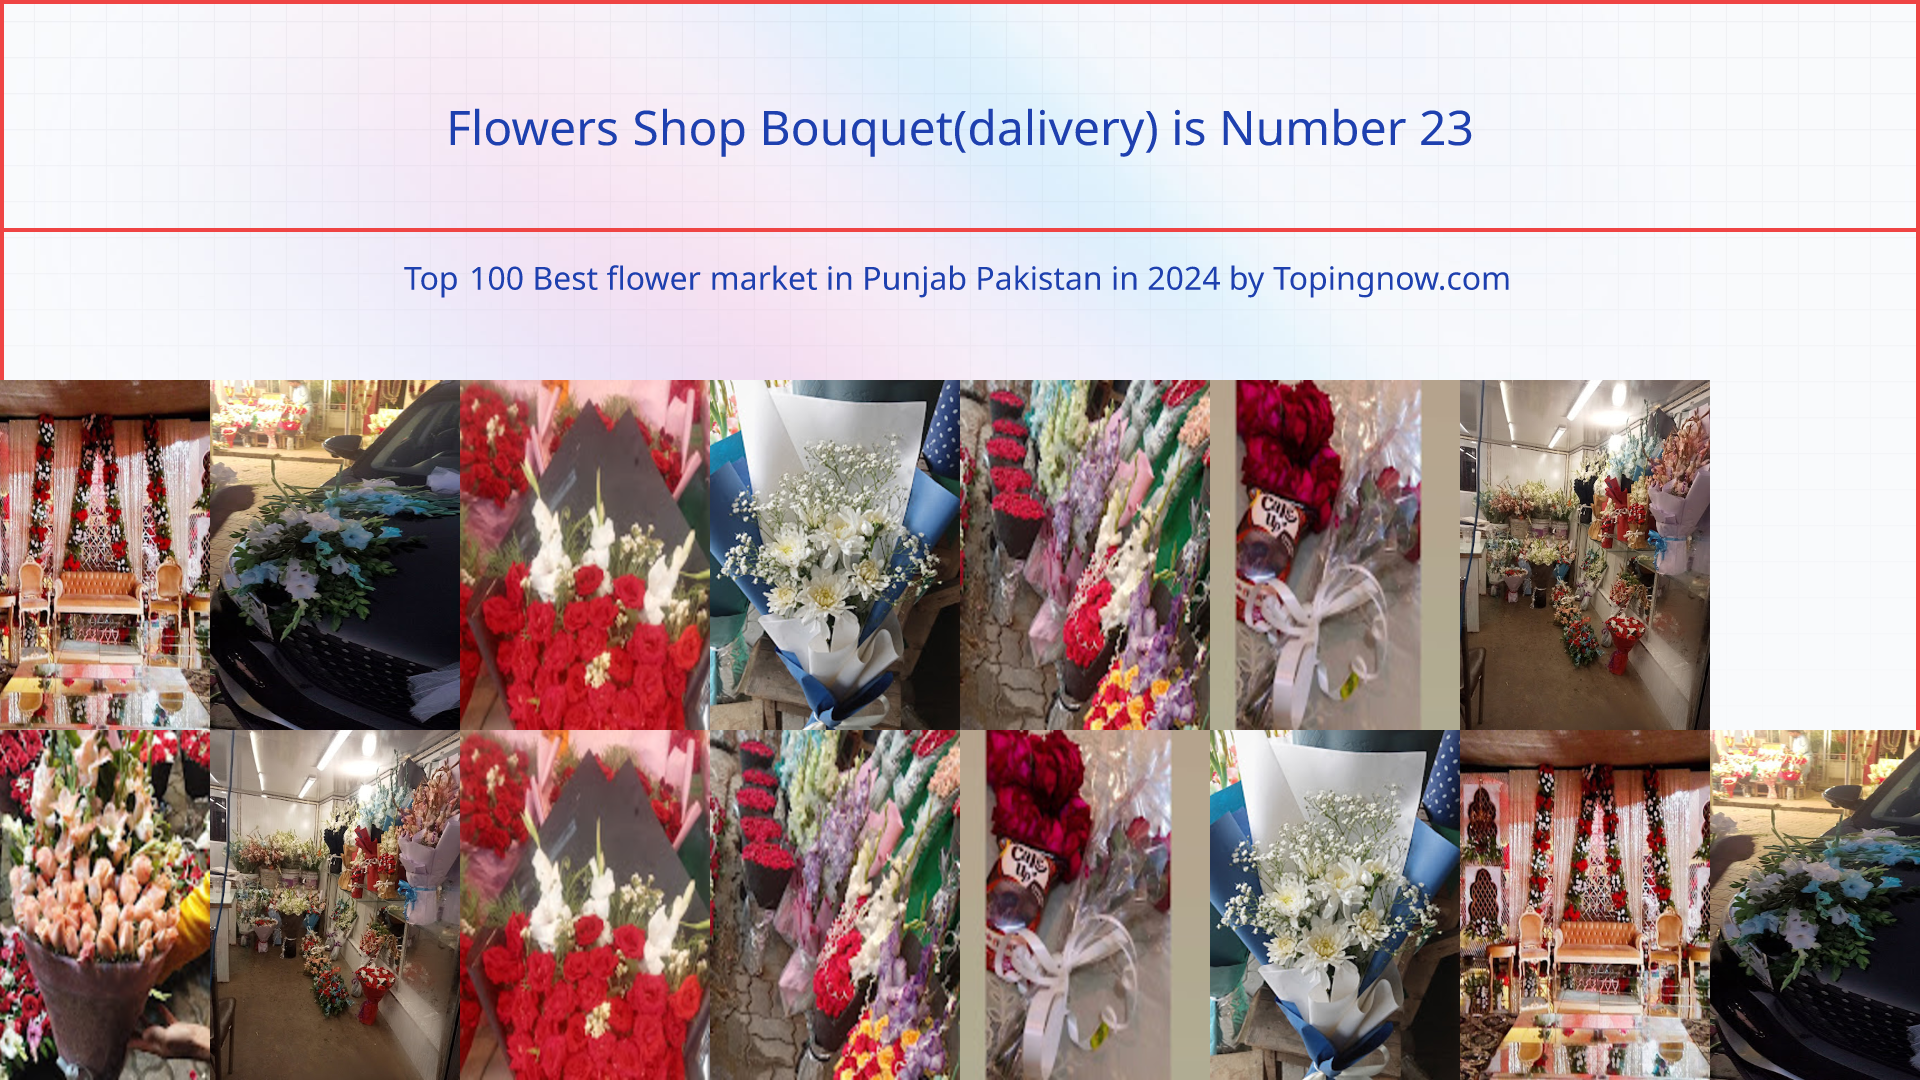 Flowers Shop Bouquet(dalivery): Top 100 Best flower market in Punjab Pakistan in 2024